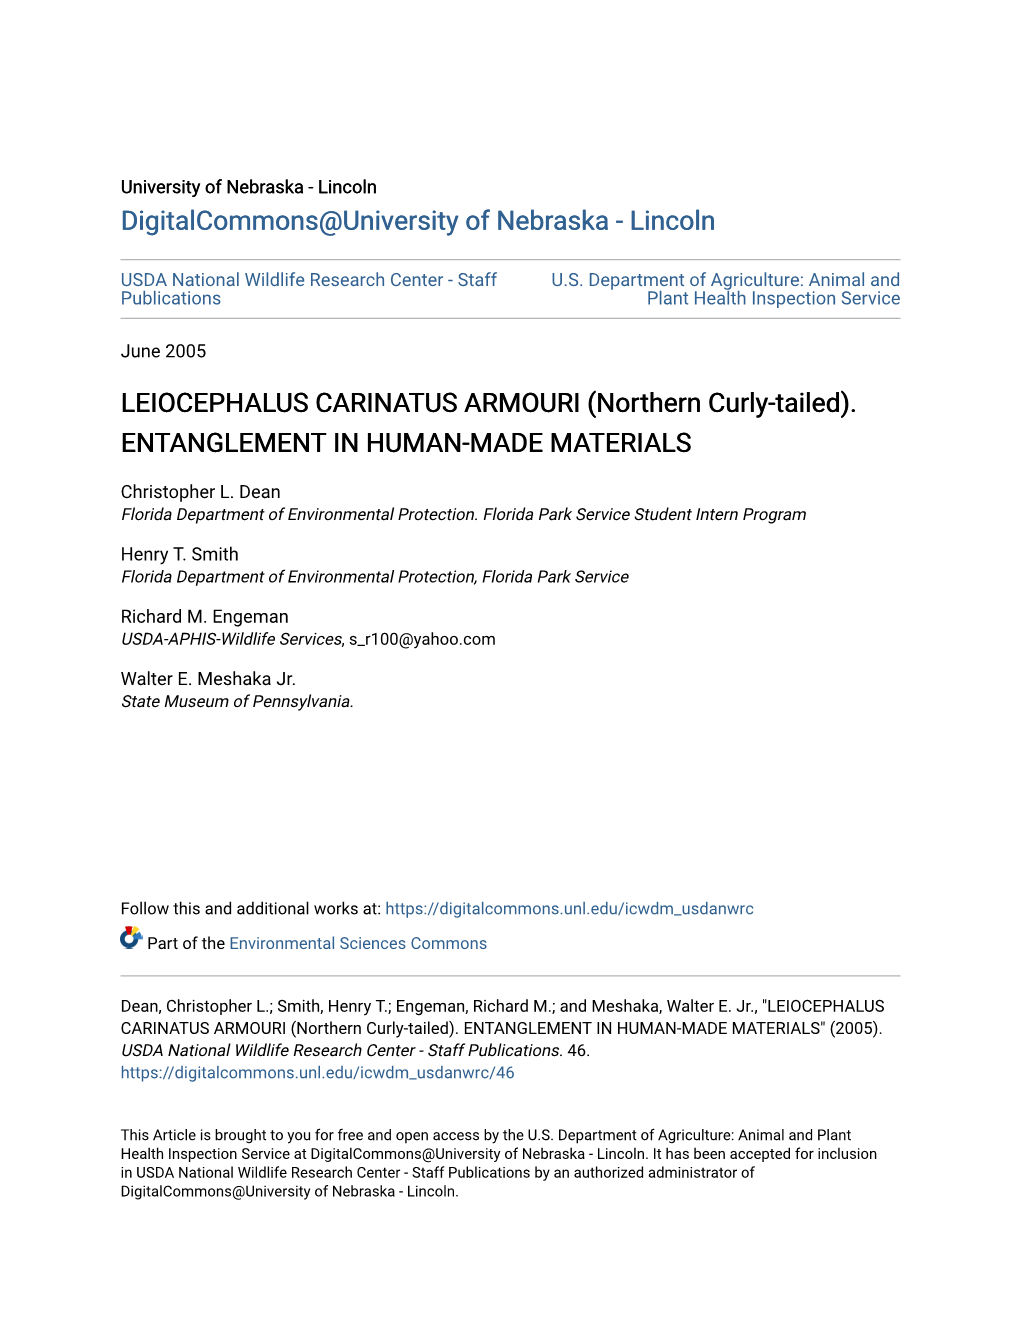 LEIOCEPHALUS CARINATUS ARMOURI (Northern Curly-Tailed)